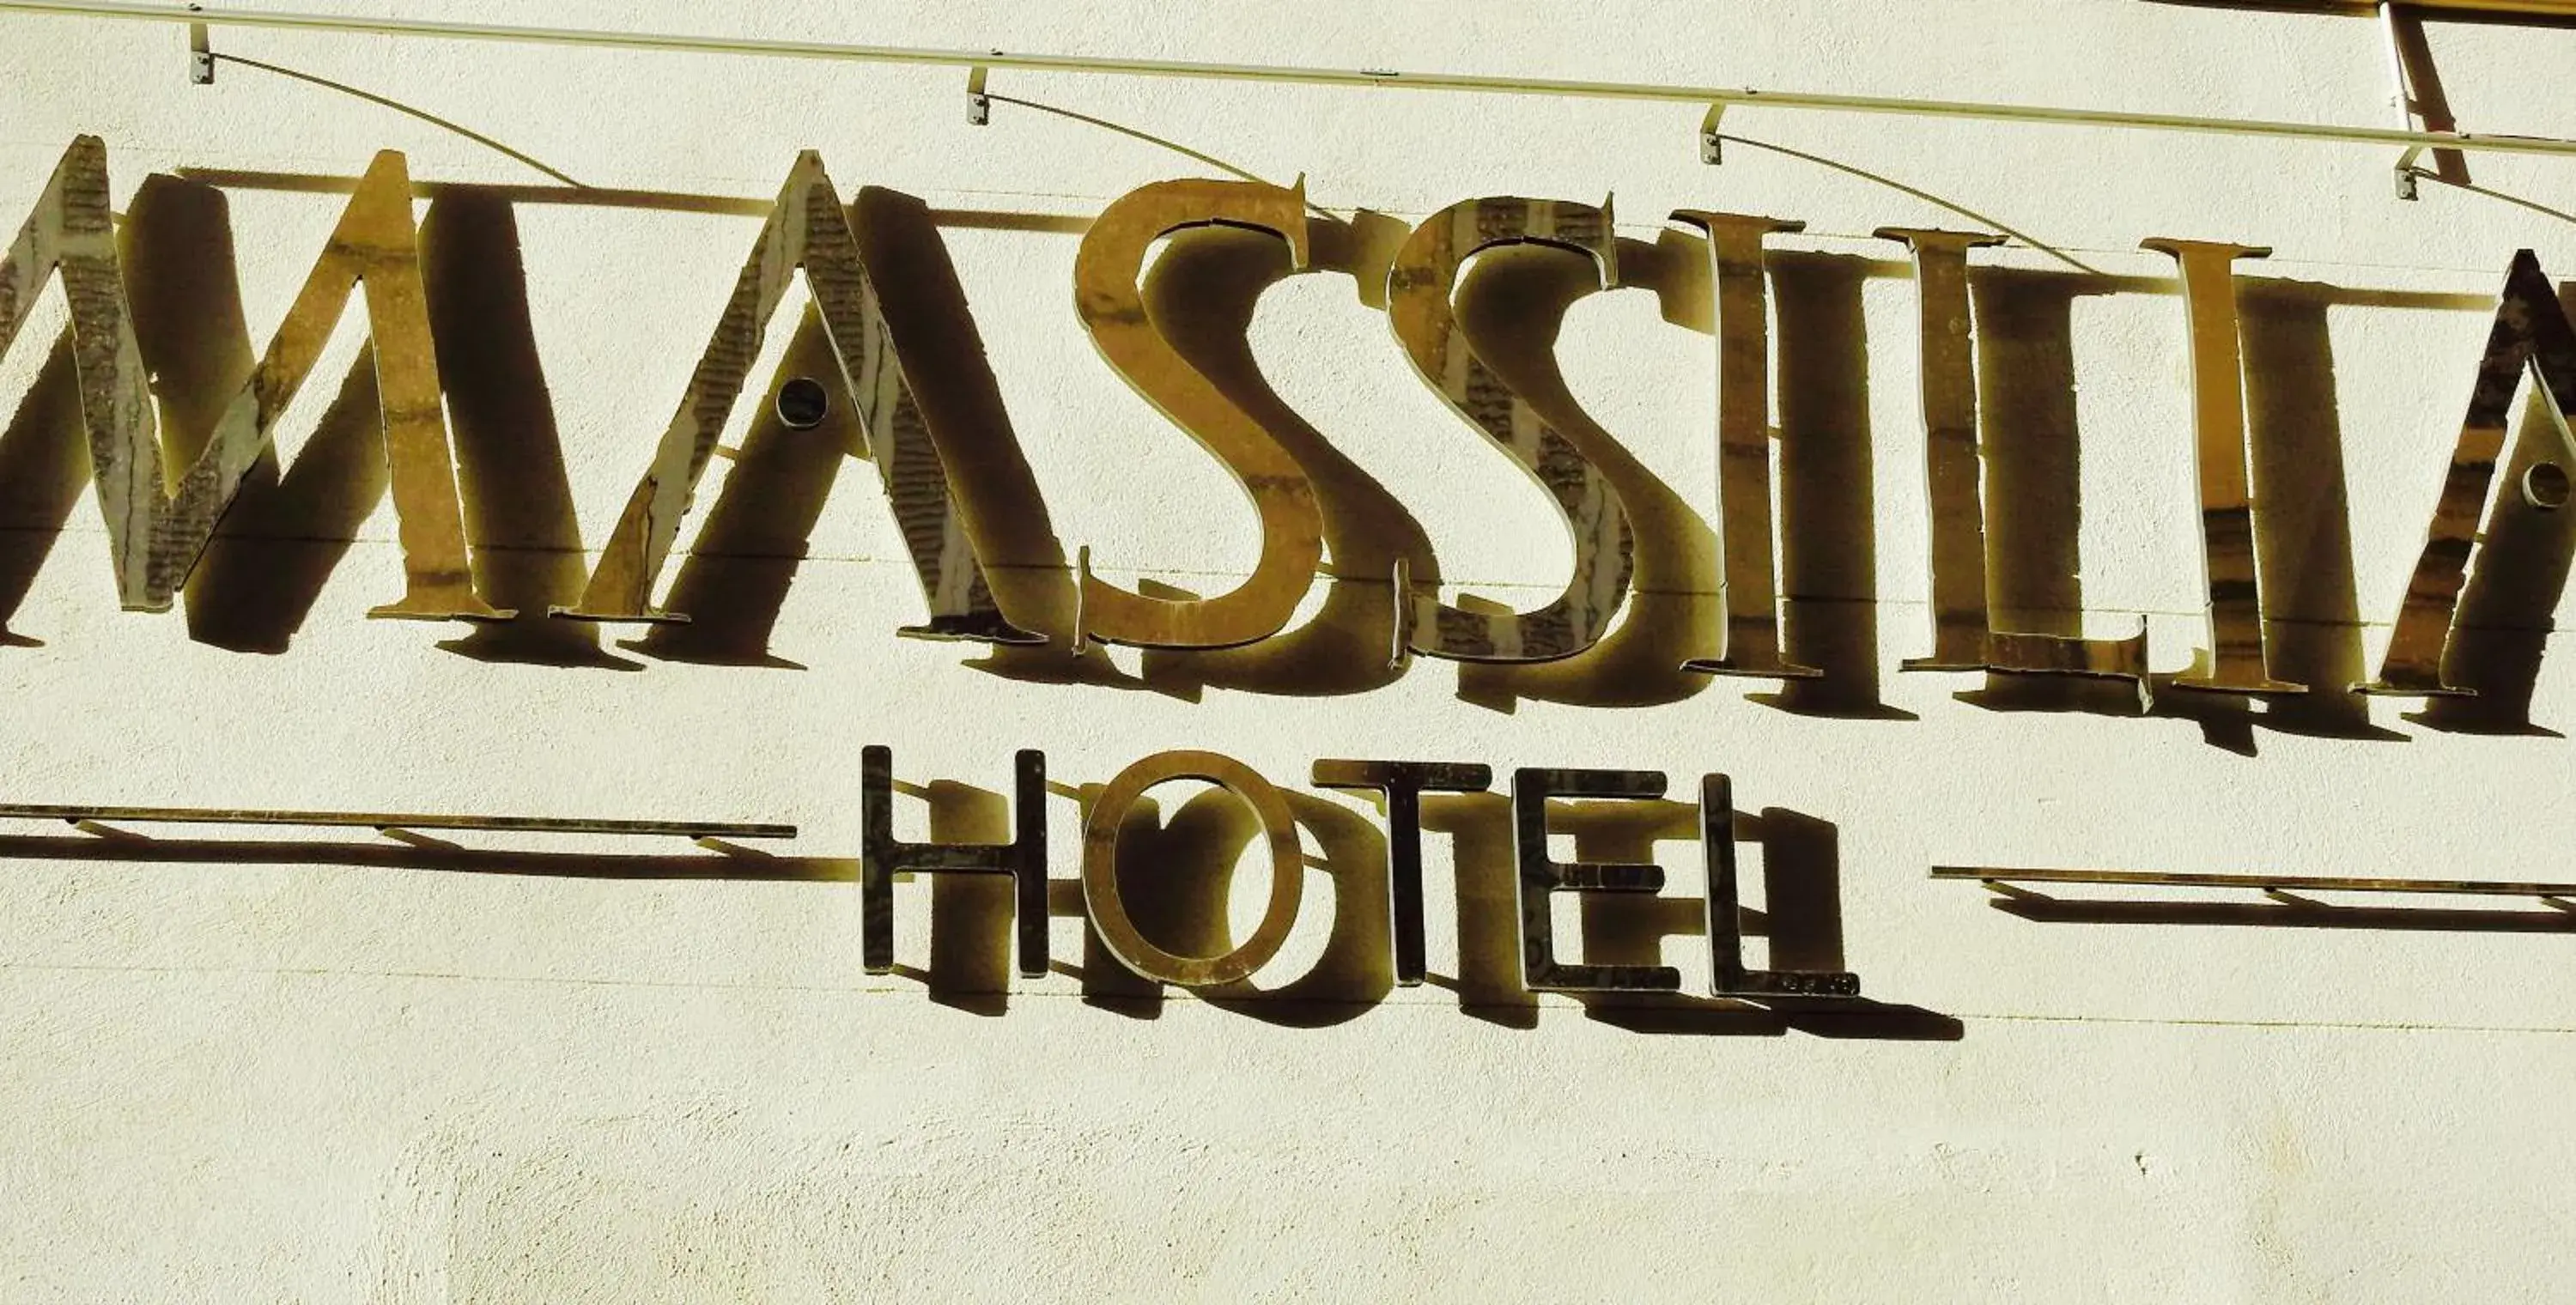 Property logo or sign in Massilia hôtel